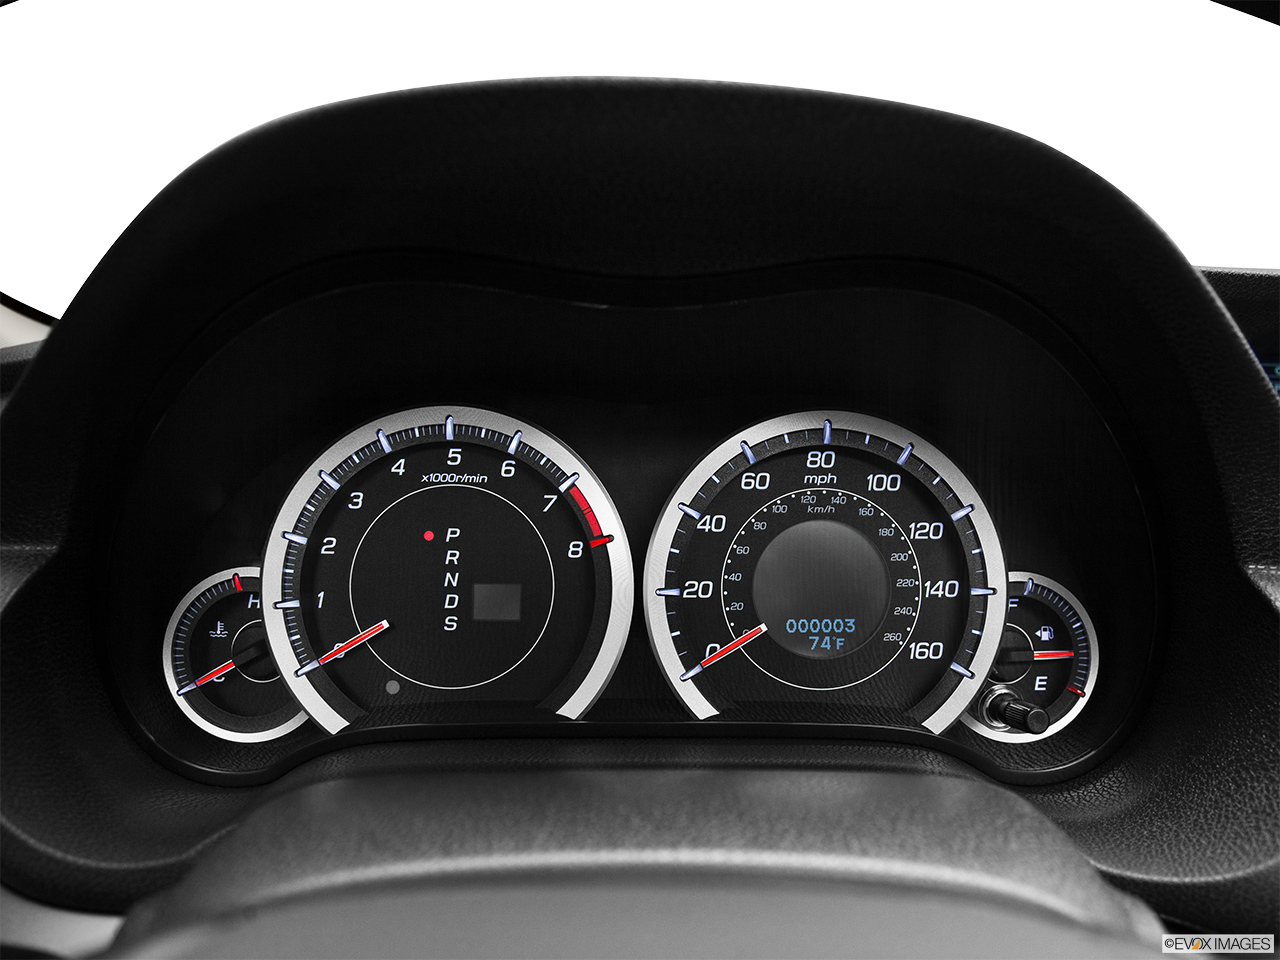 2012 Acura TSX Sport Wagon Speedometer/tachometer. 